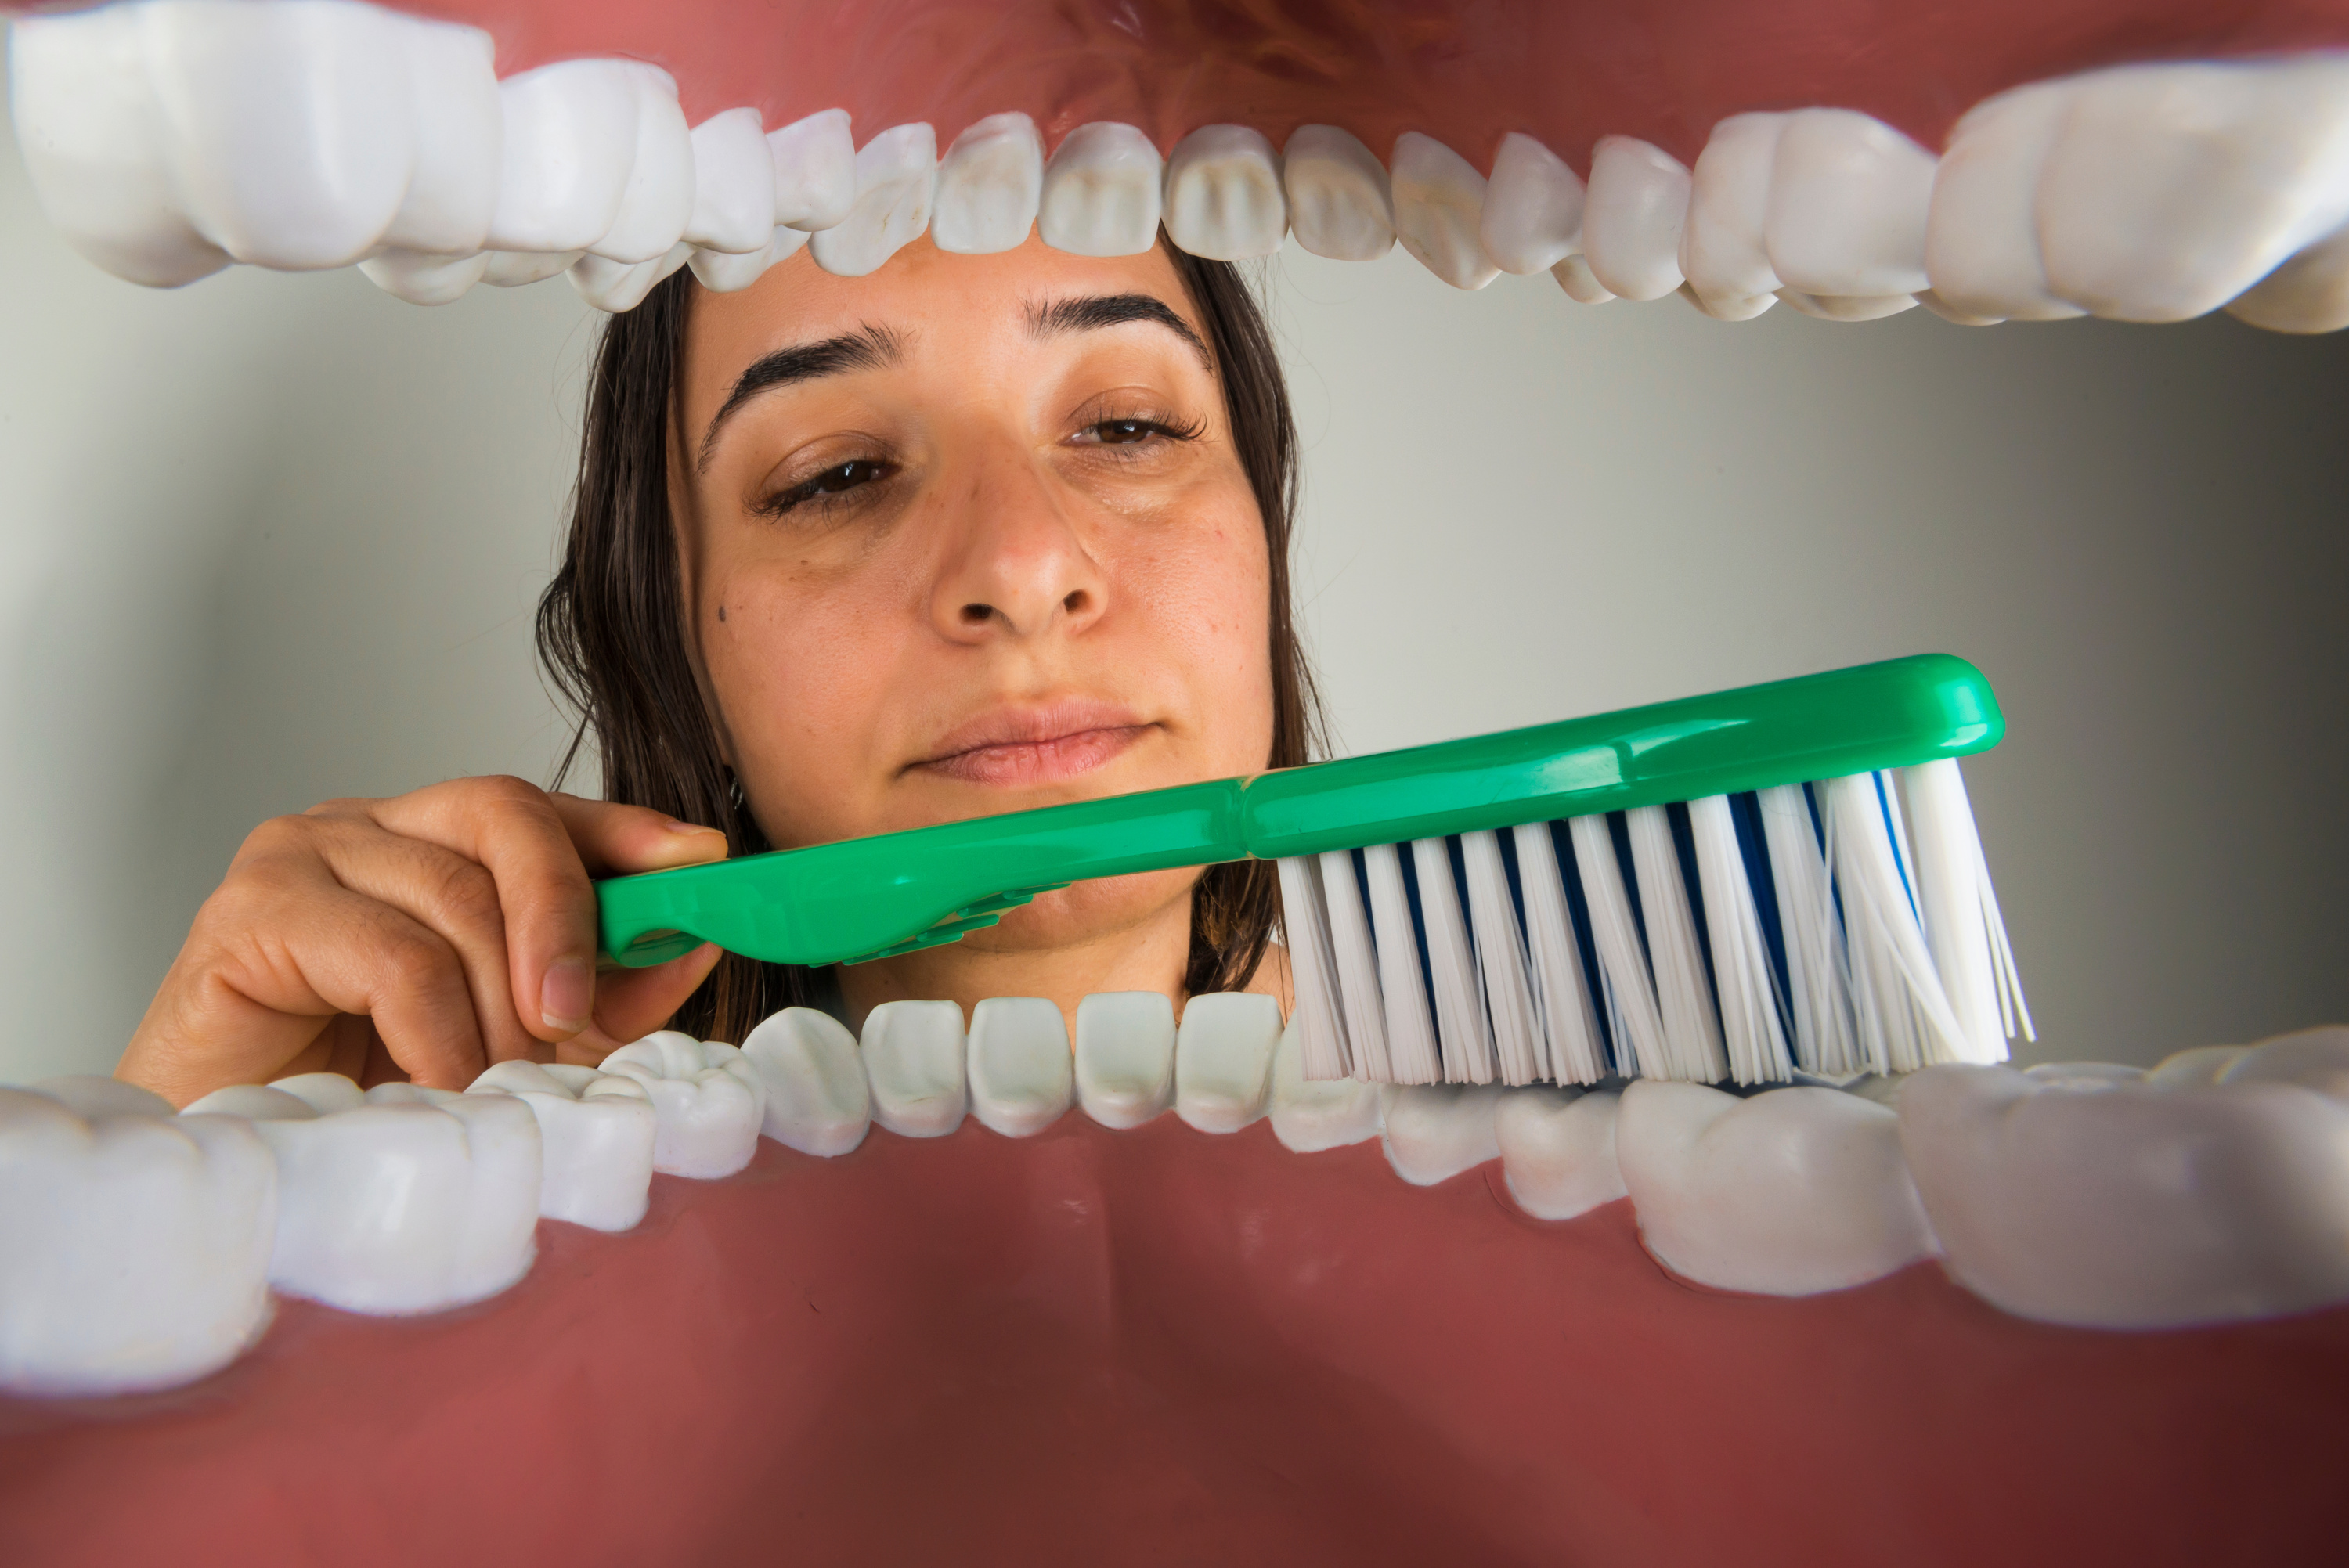 Le brossage mécanique des dents peut empêcher les bactéries et autres agents pathogènes de se faufiler dans la gorge et de provoquer des infections pulmonaires telles que la pneumonie. © sezer66, Adobe Stock